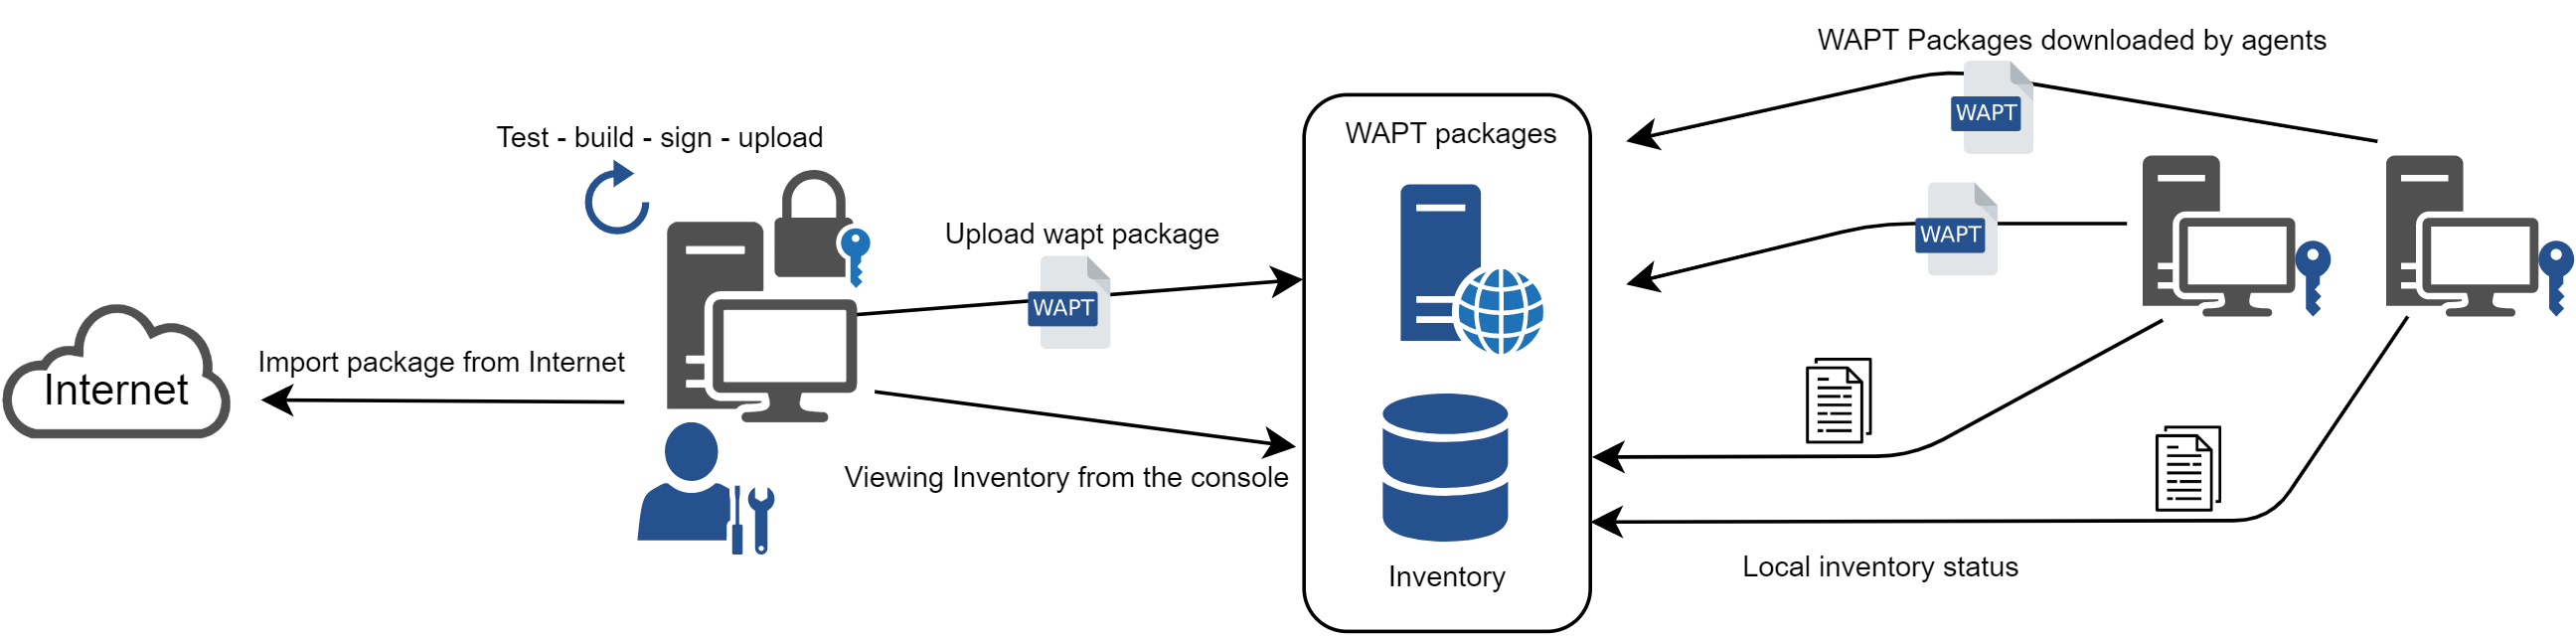 Diagramme de flux montrant le mode de fonctionnement général avec WAPT